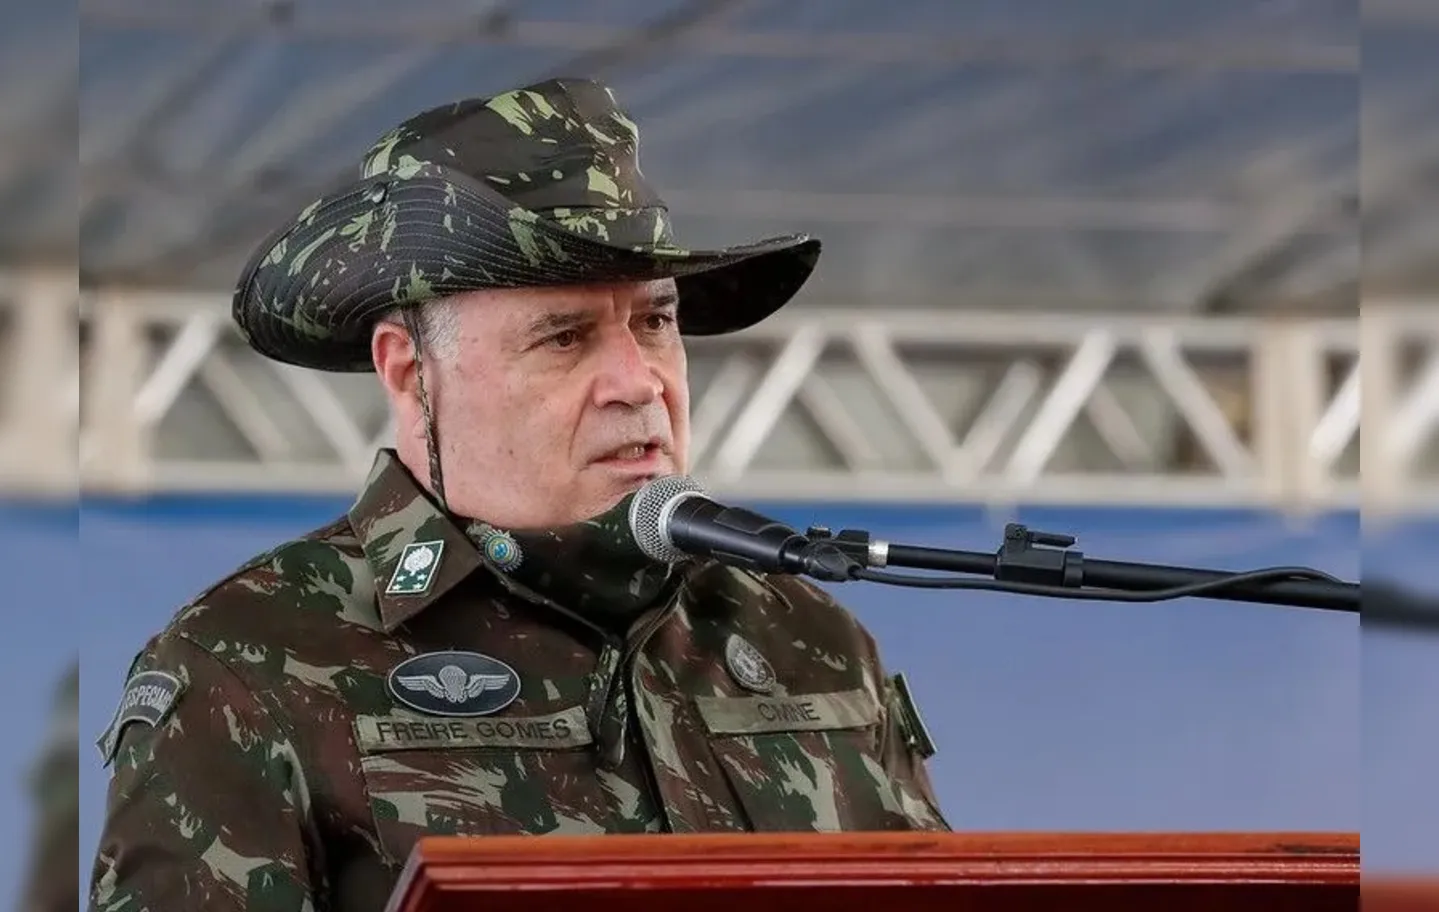 Freire Gomes deverá ter o atual comandante do Exército como testemunha em seu favor